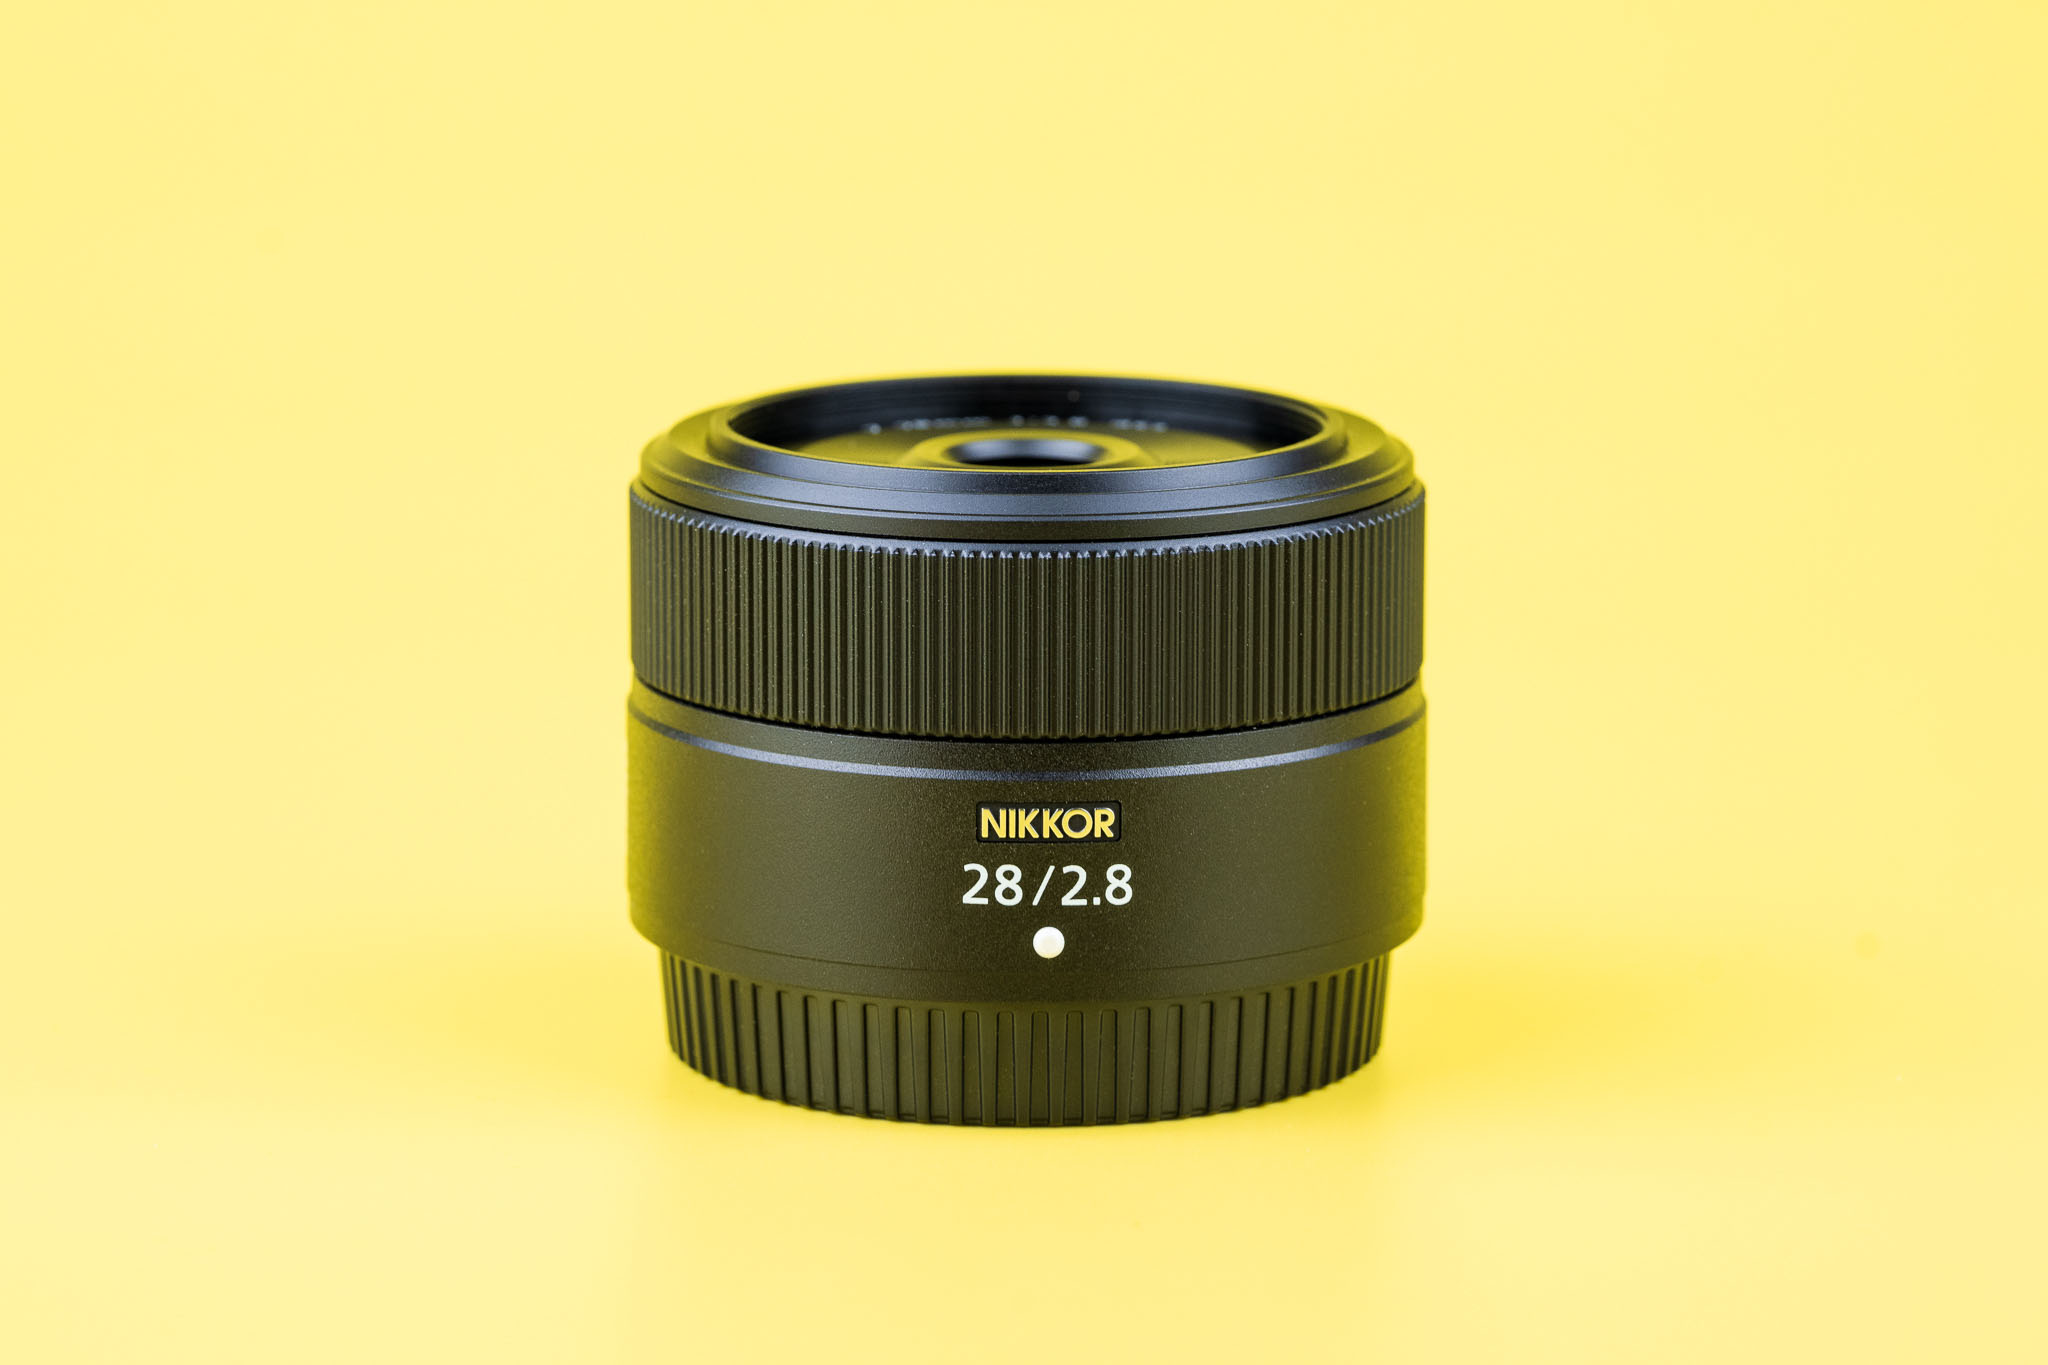 Nikon Z 28mm f/2.8 Review